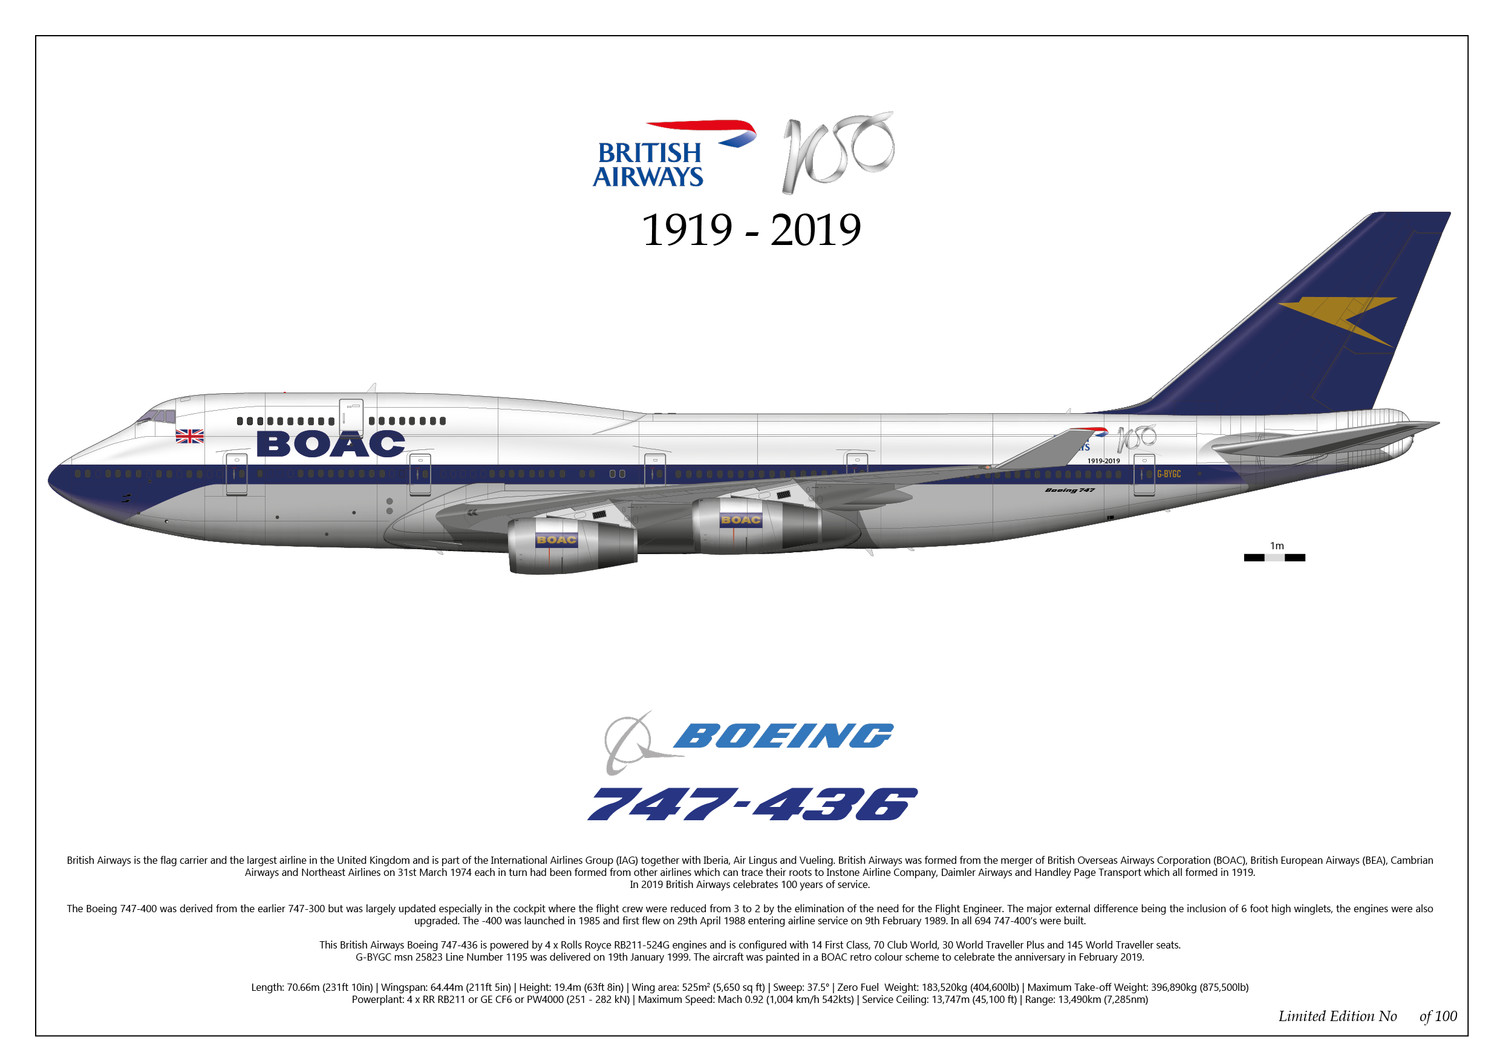 Boeing 747-400 British Airways 100th Anniversary G-BYGC - Limited Edition - Print